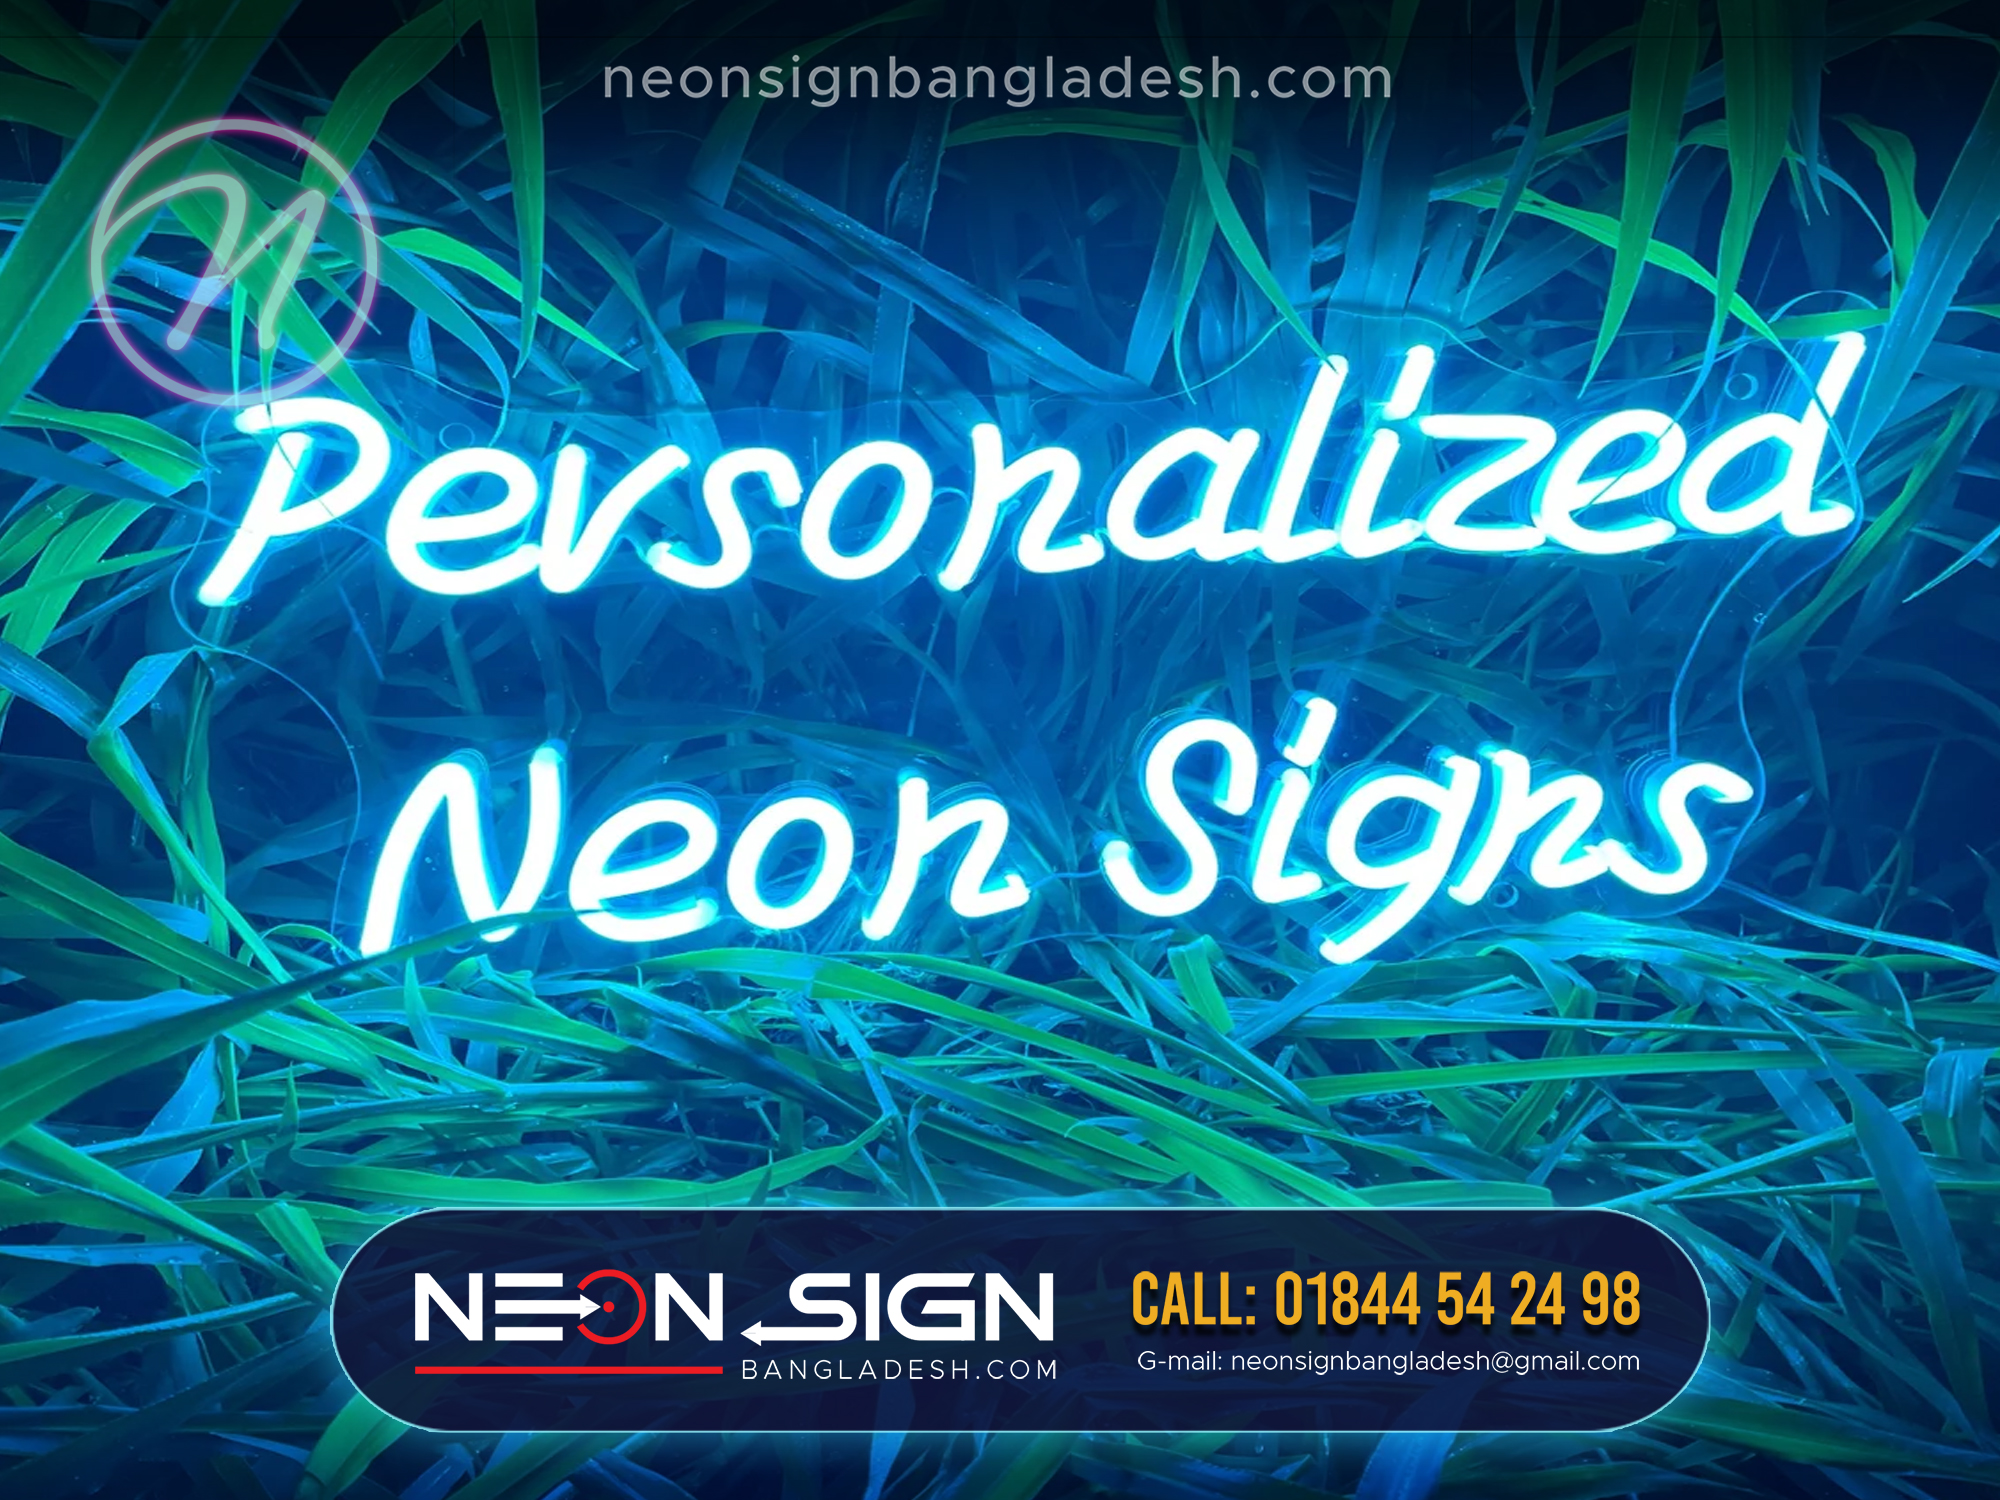 Outdoor Neon Signs Shop in Bangladesh